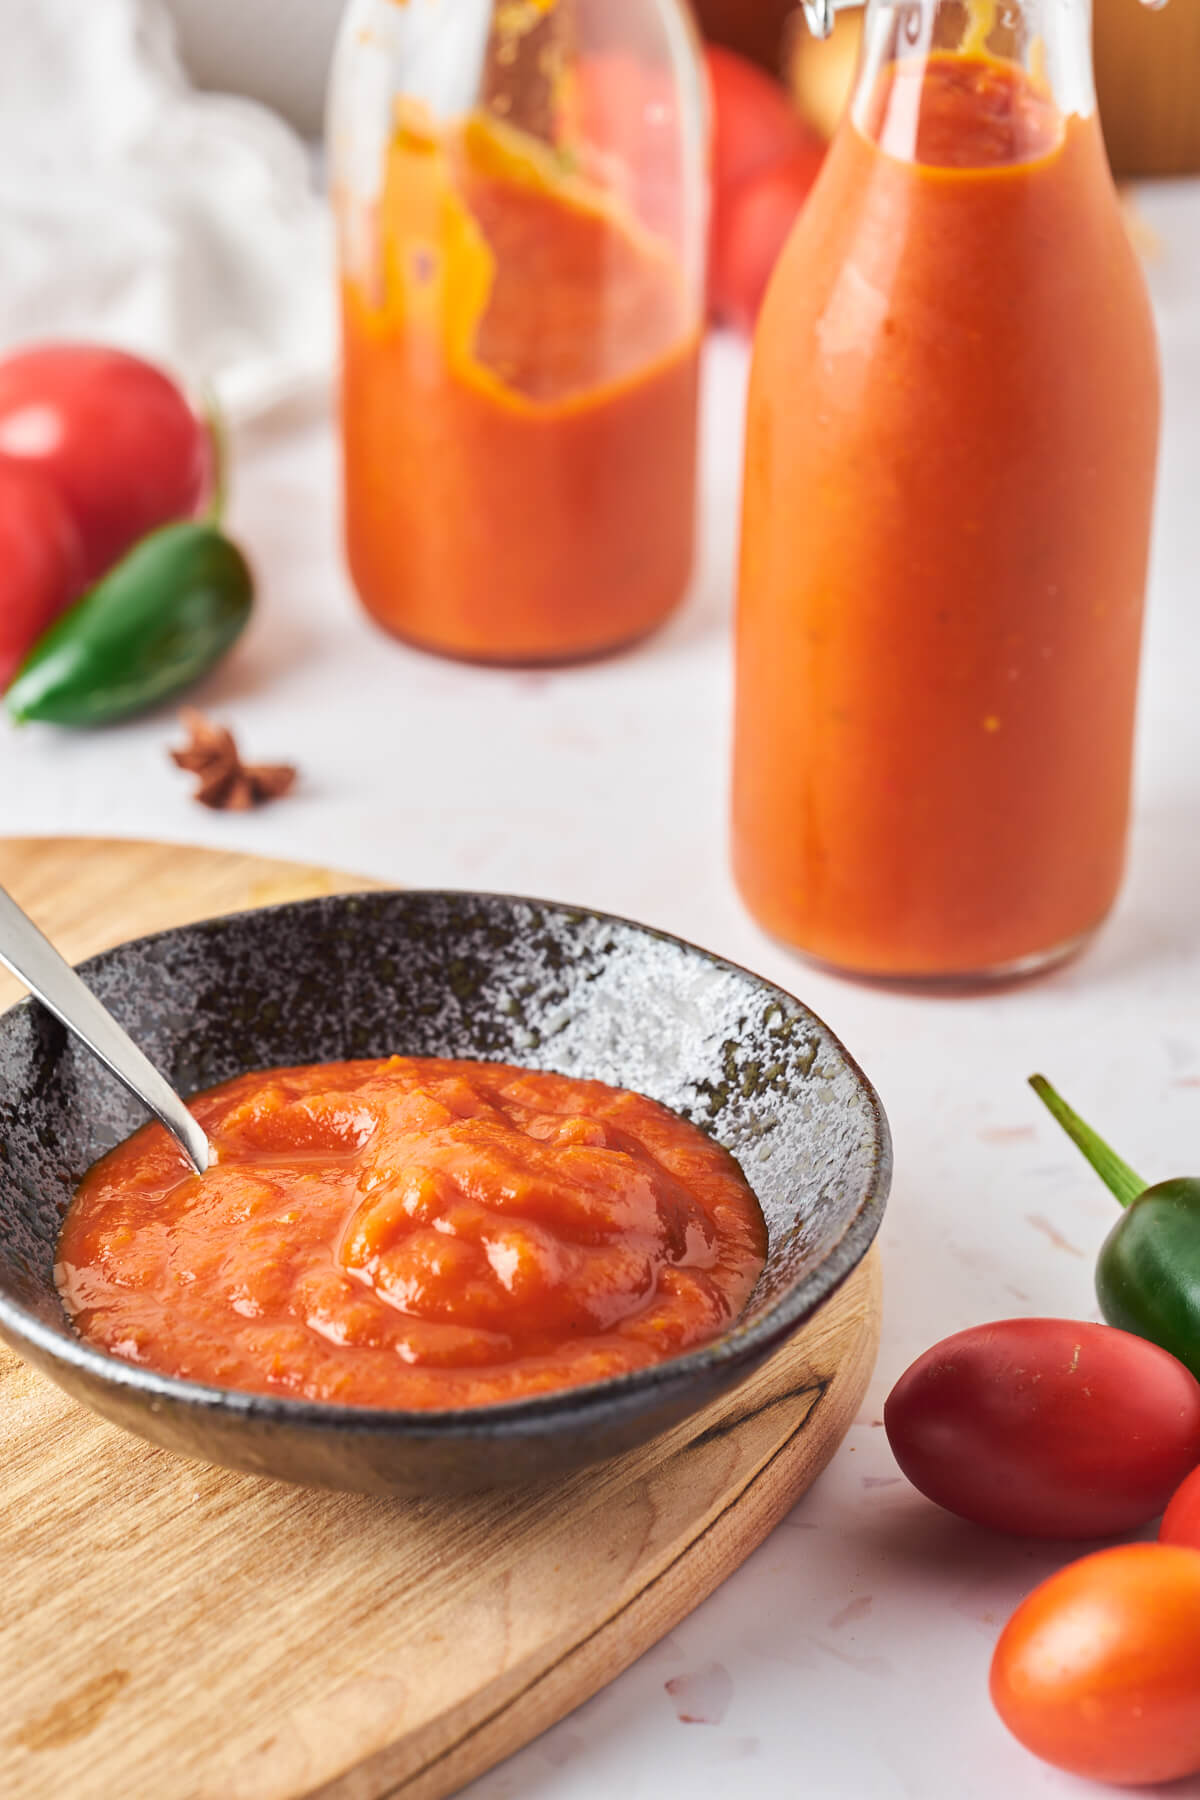 hjemmelavet ketchup i to flasker og lille skål med ketchup samt friske tomater og chili